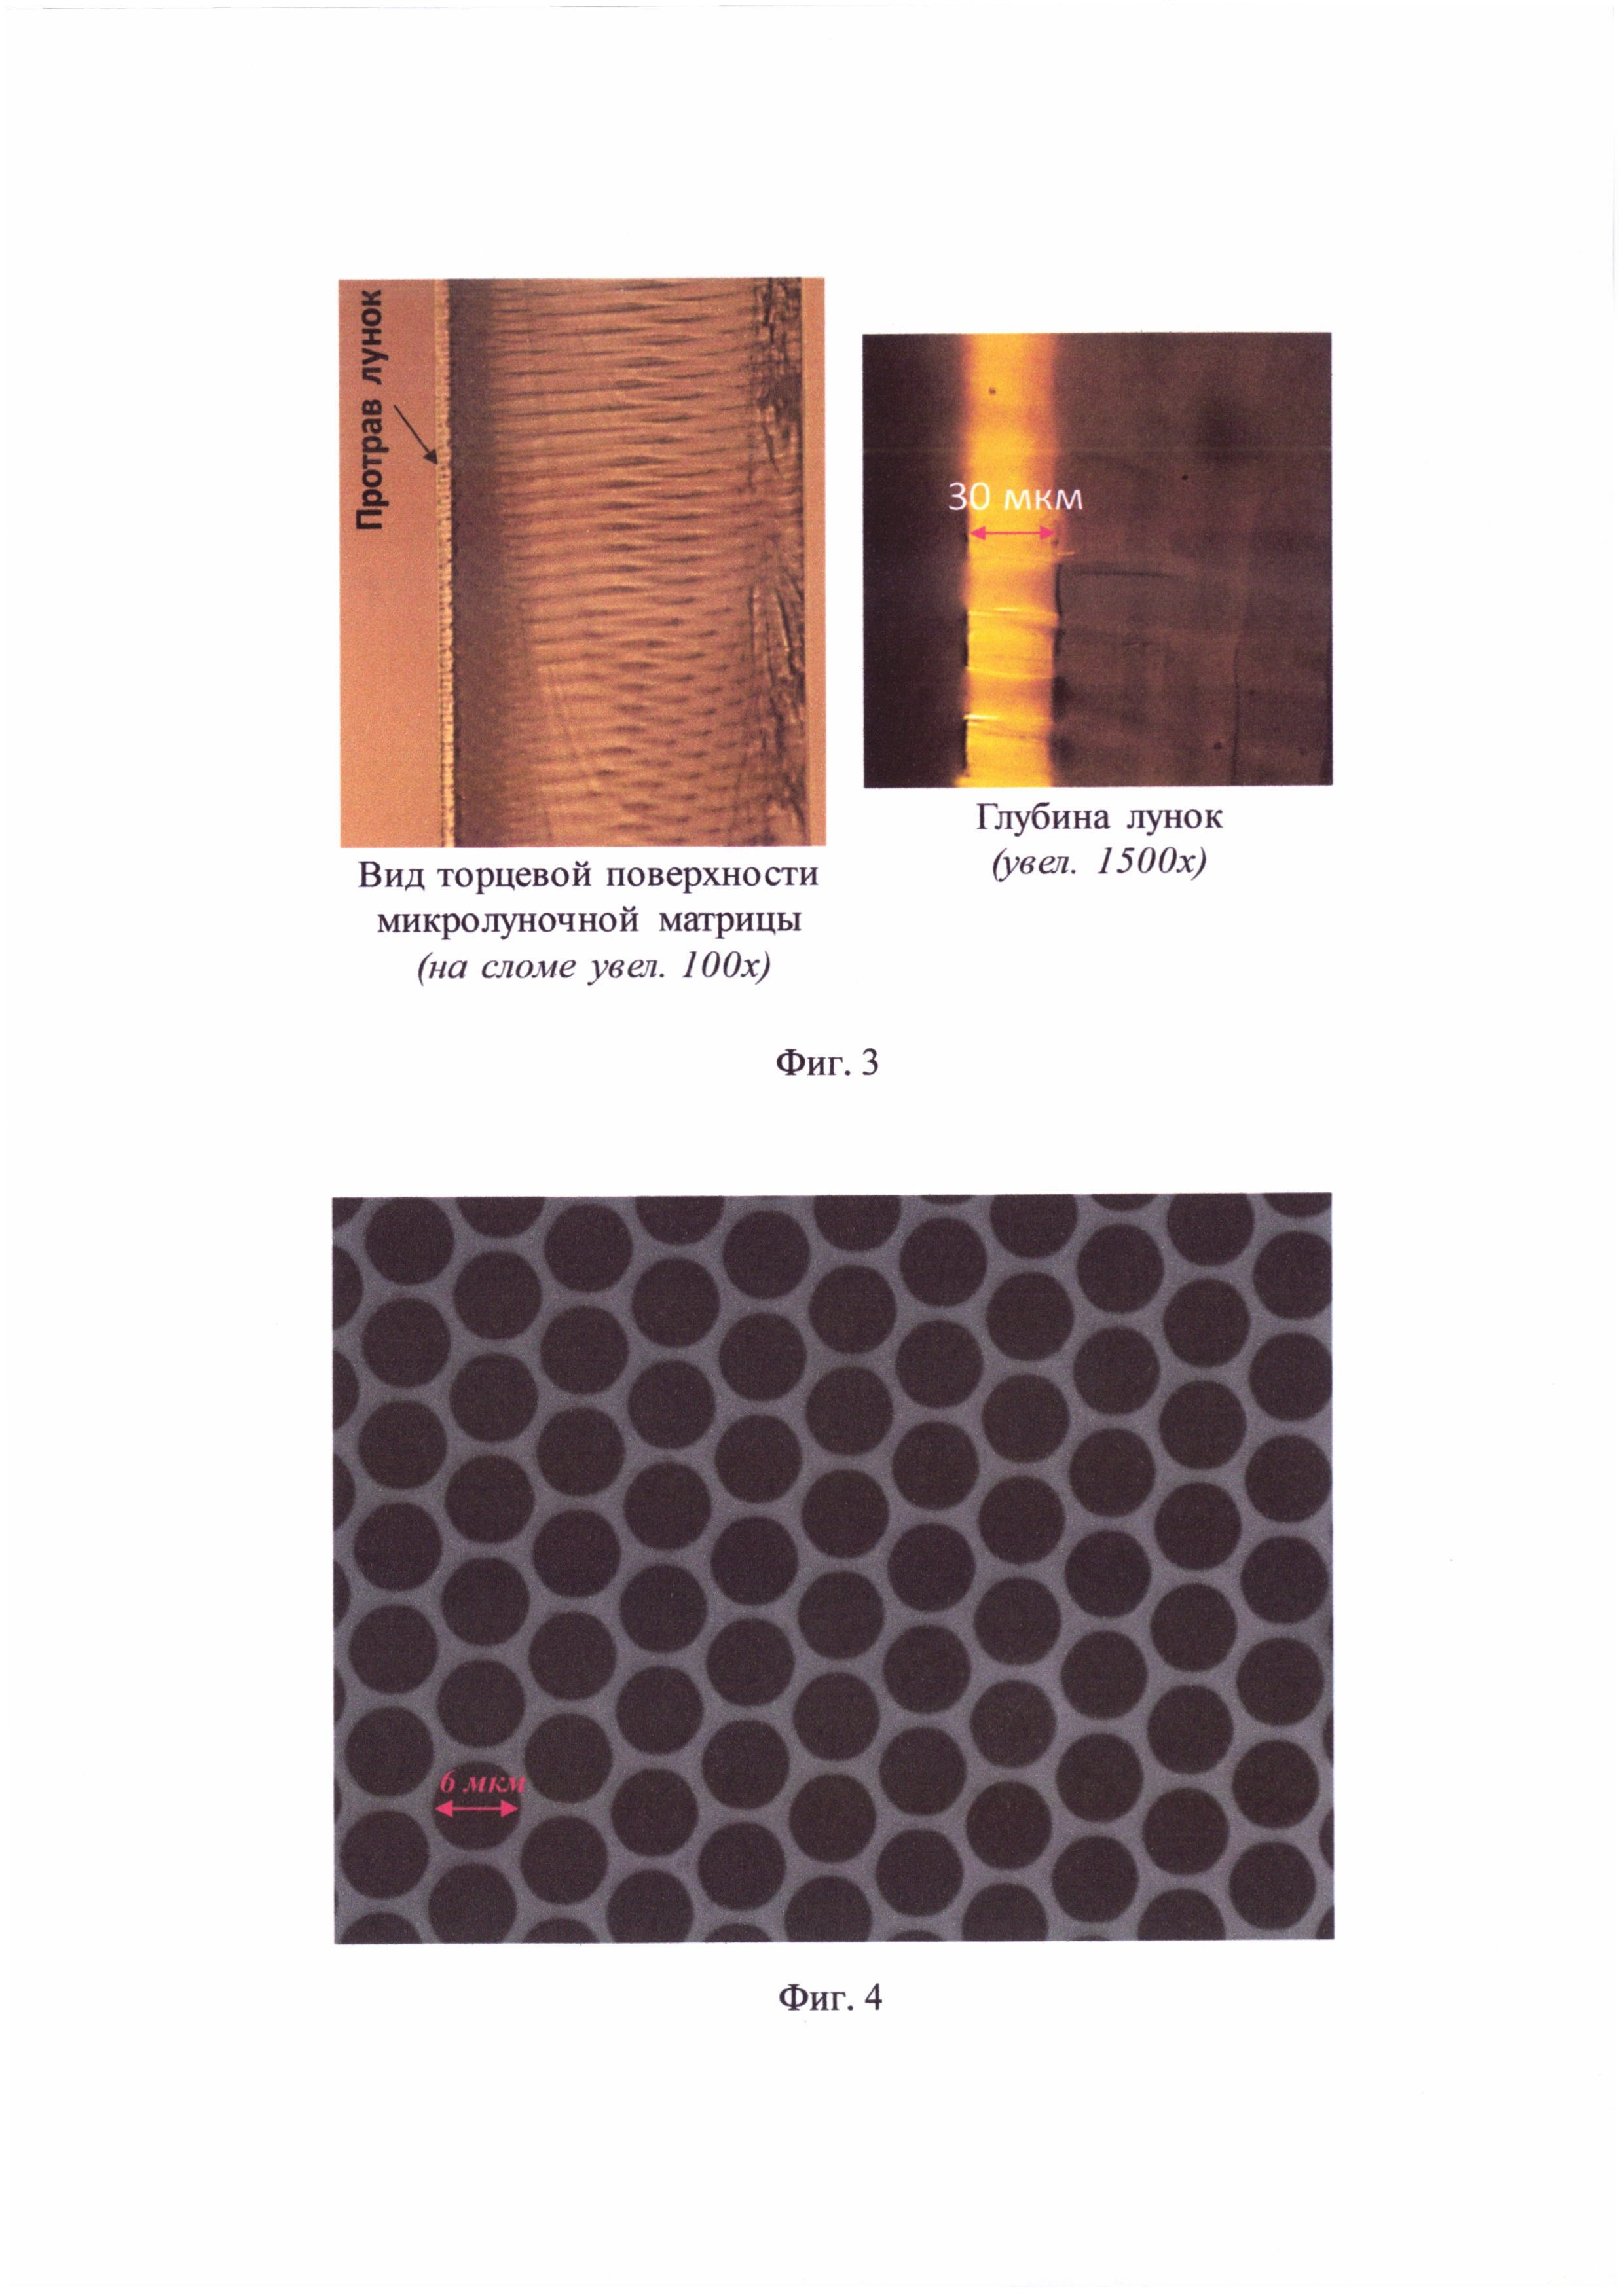 Способ изготовления волоконно-оптической матрицы для биочипа (варианты)